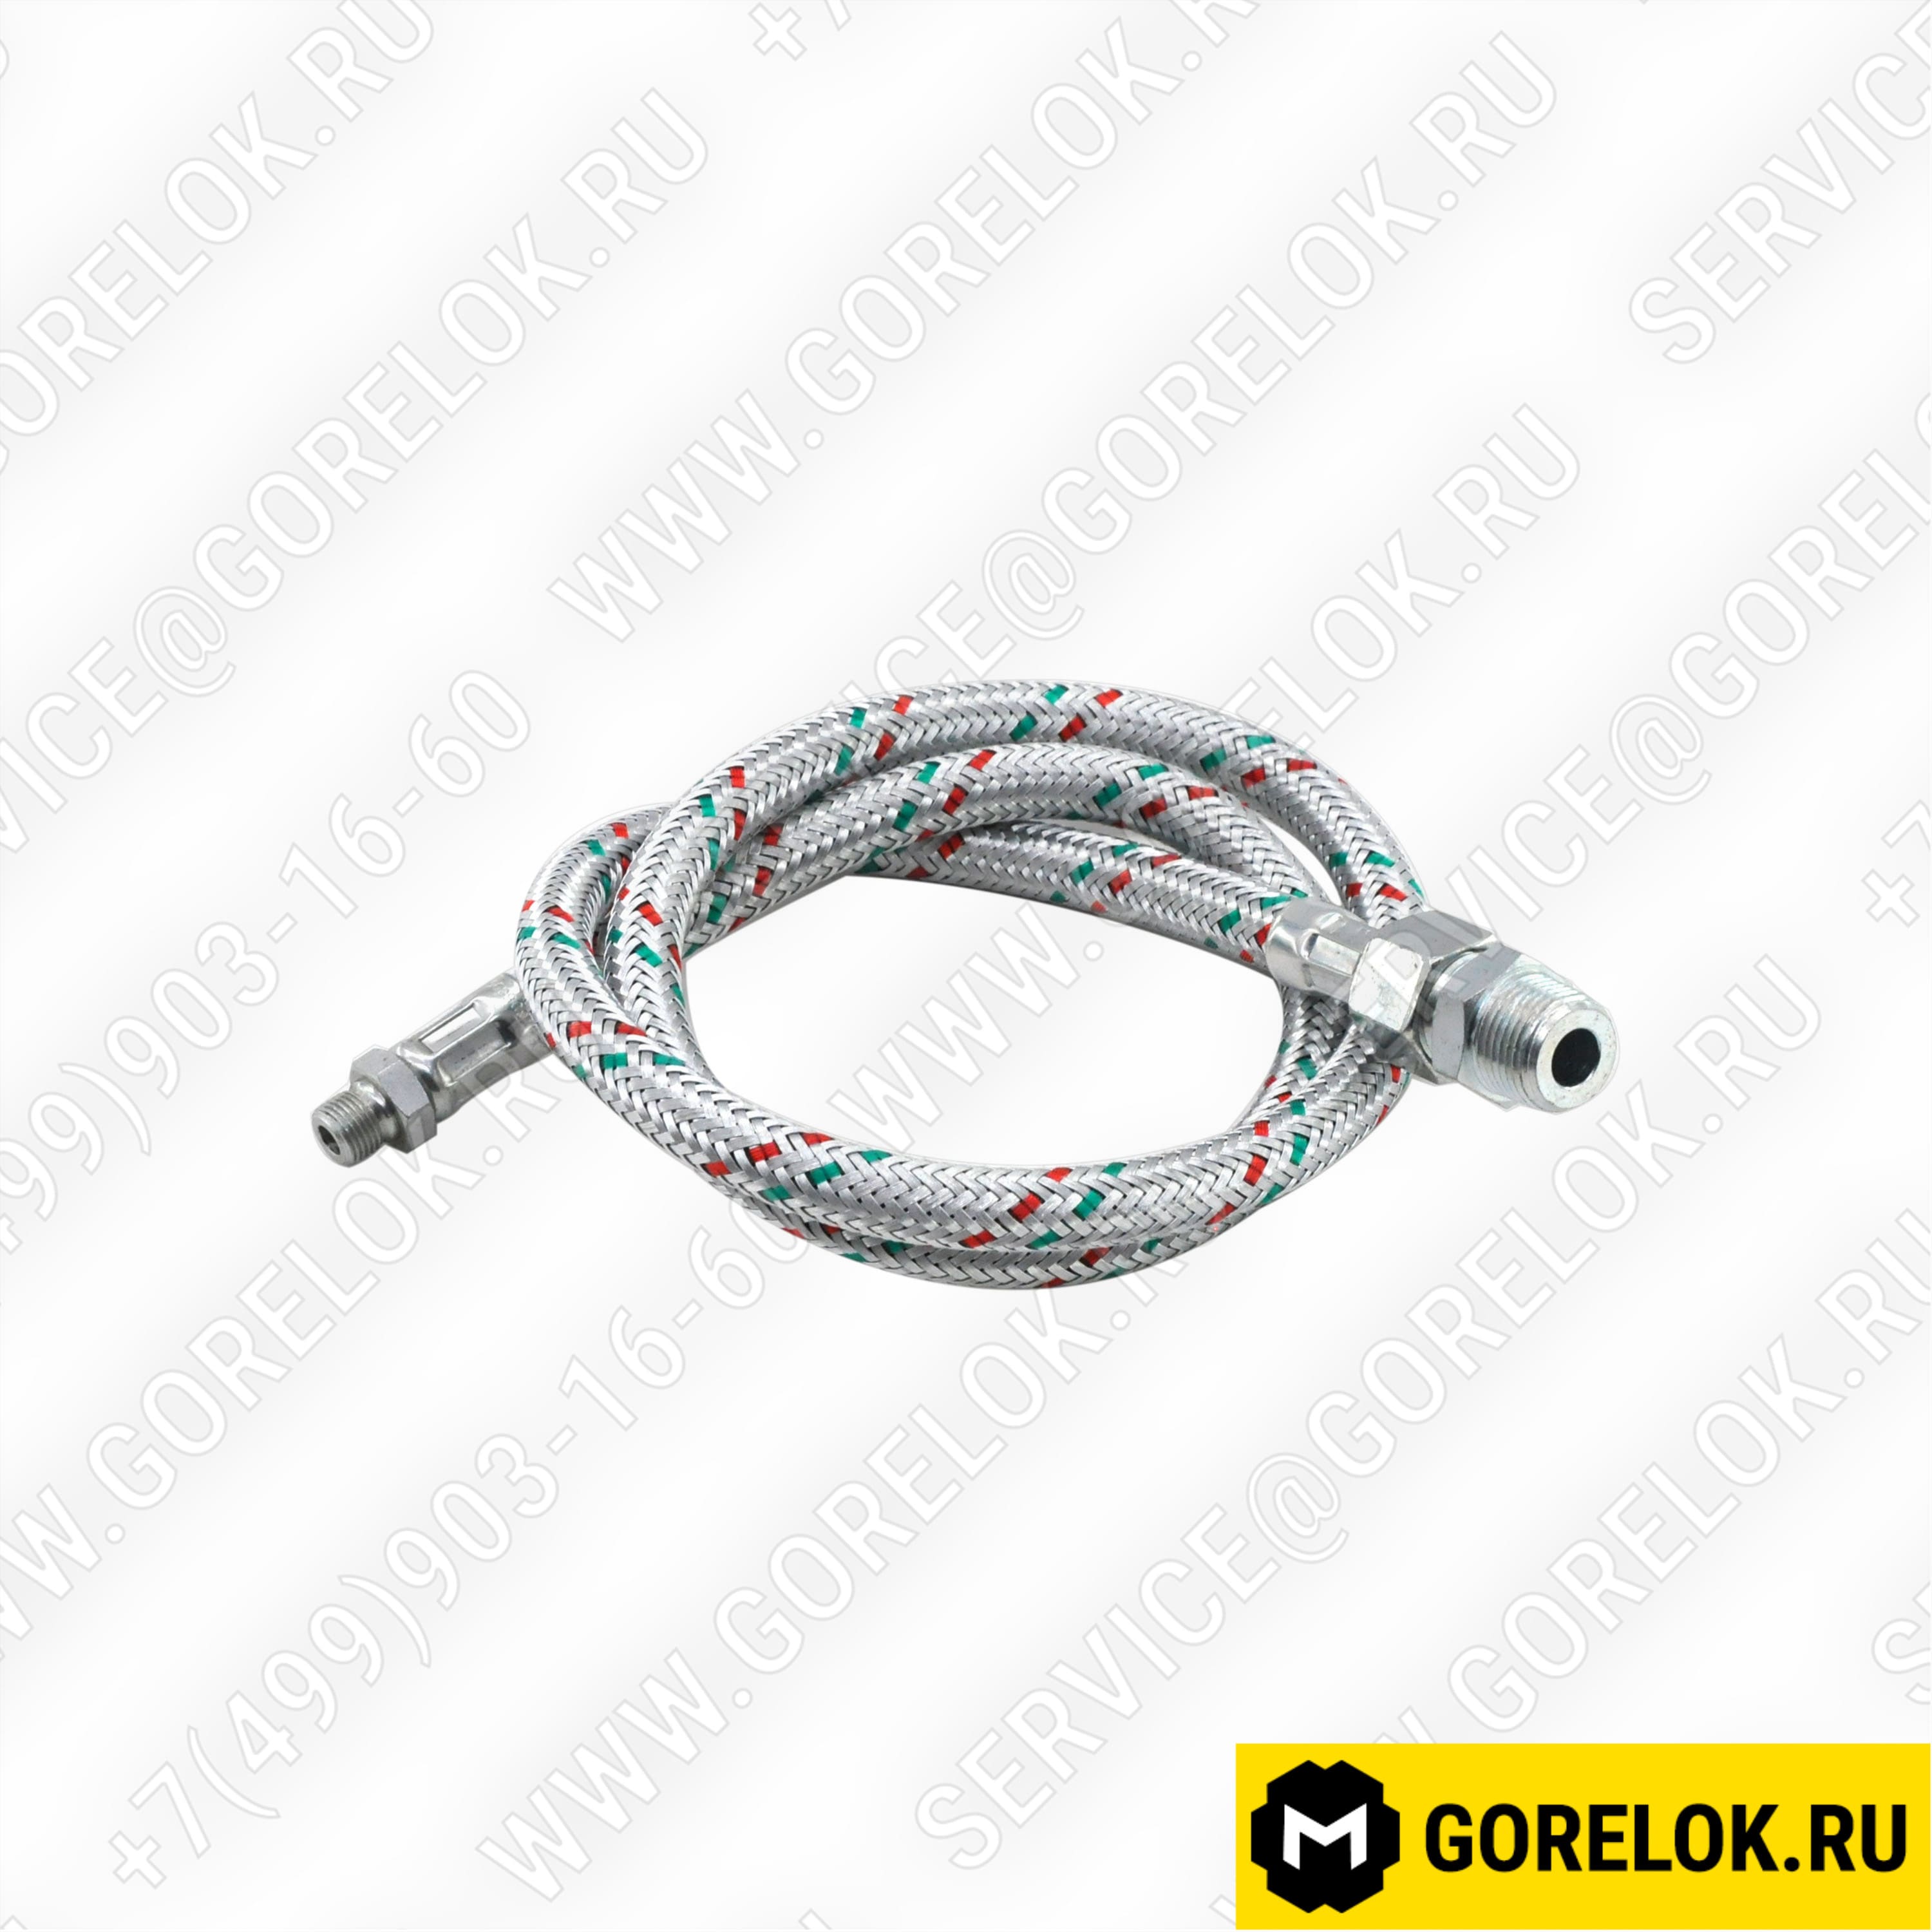 13013081 Купить Жидкотопливный шланг G1/8" - G3/8" | Zipgorelok.ru